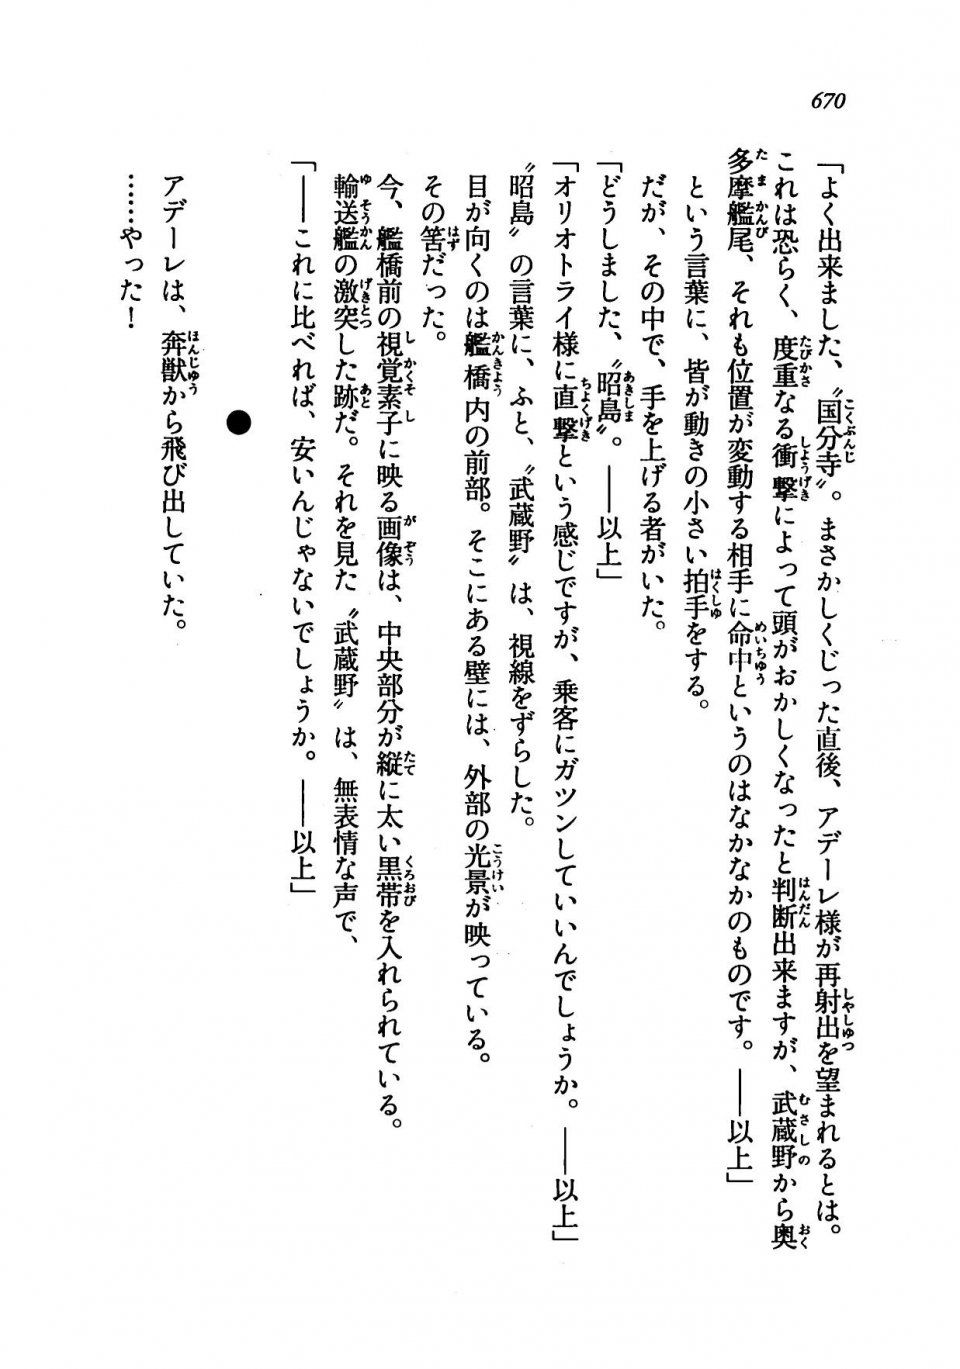 Kyoukai Senjou no Horizon LN Vol 19(8A) - Photo #670